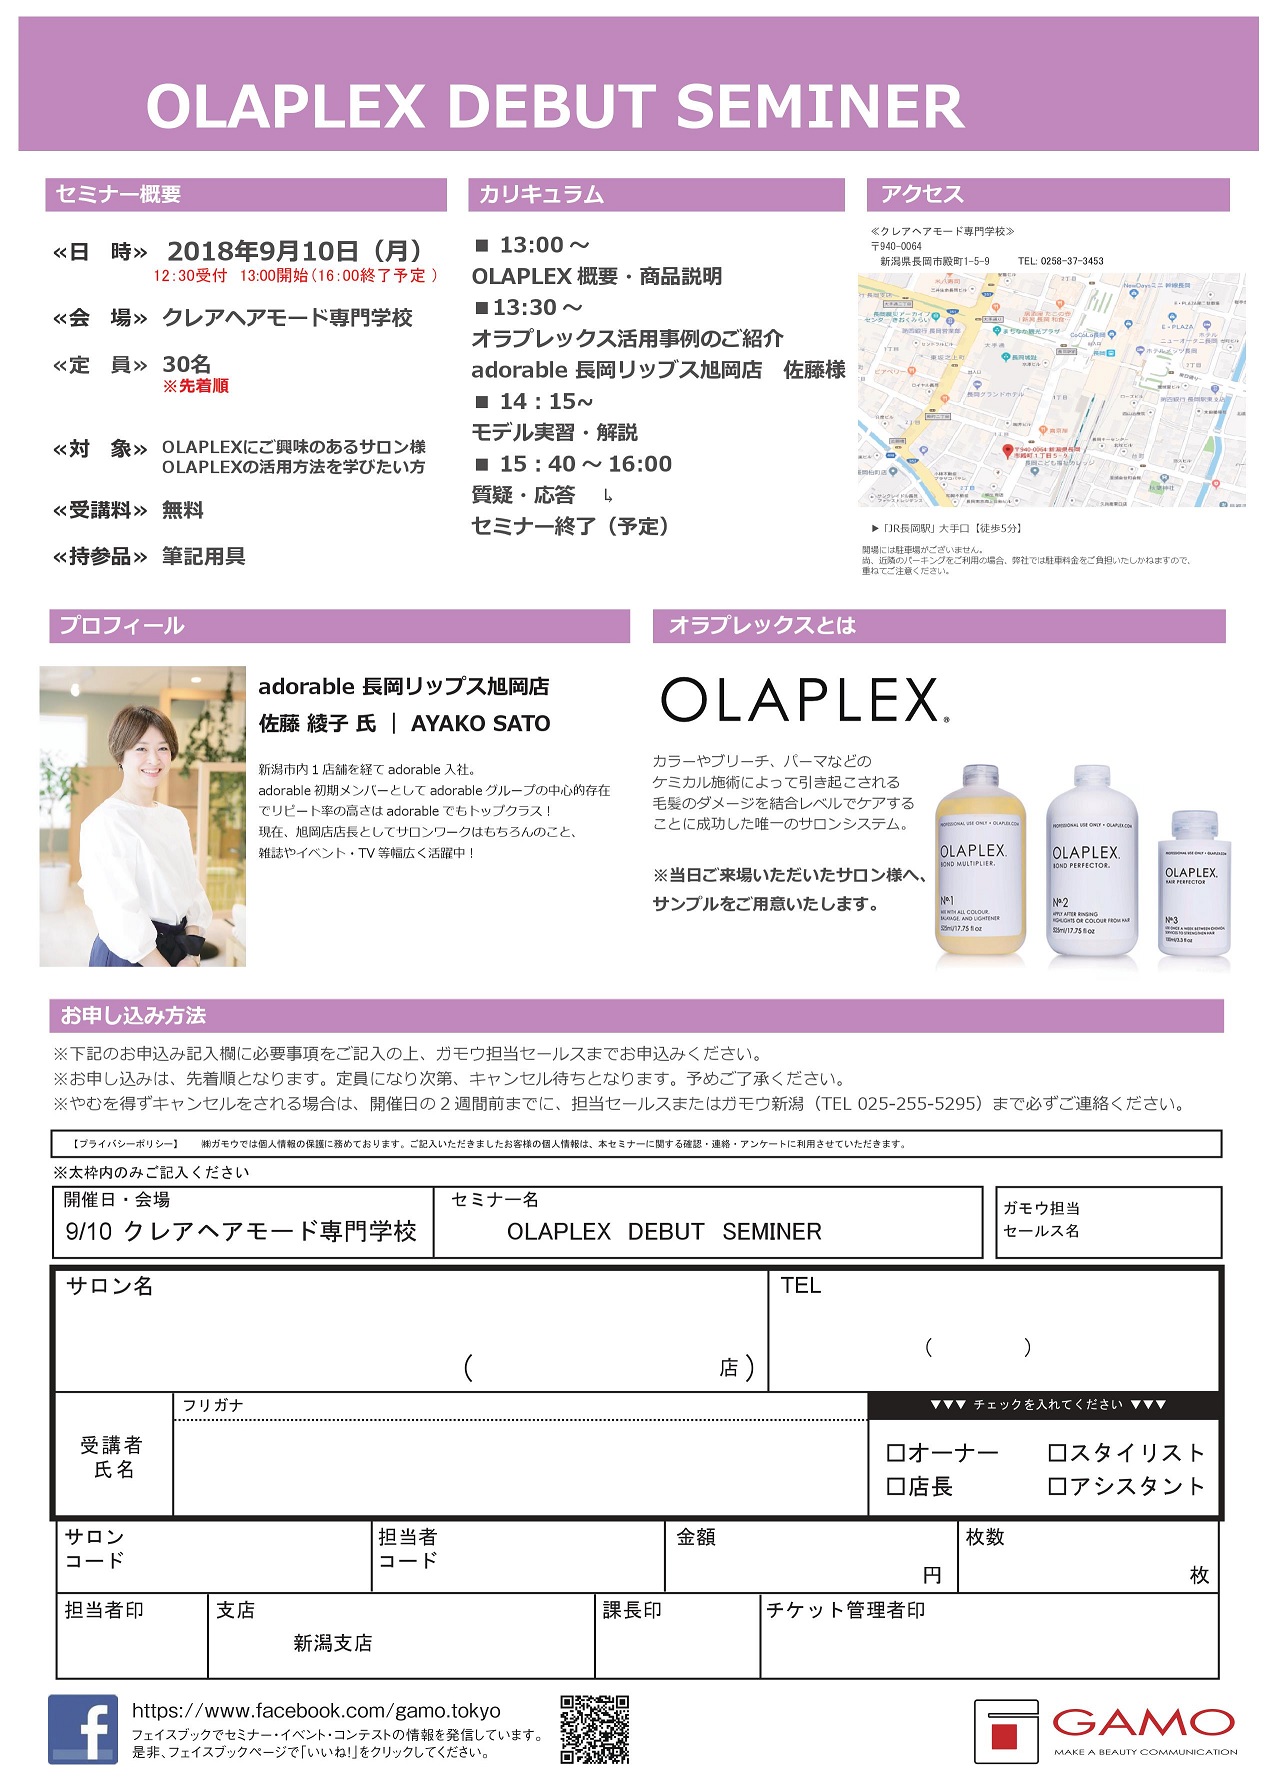 OLAPLEXデビューセミナー開催のご案内です☆旭岡店佐藤がご紹介させて頂きます！